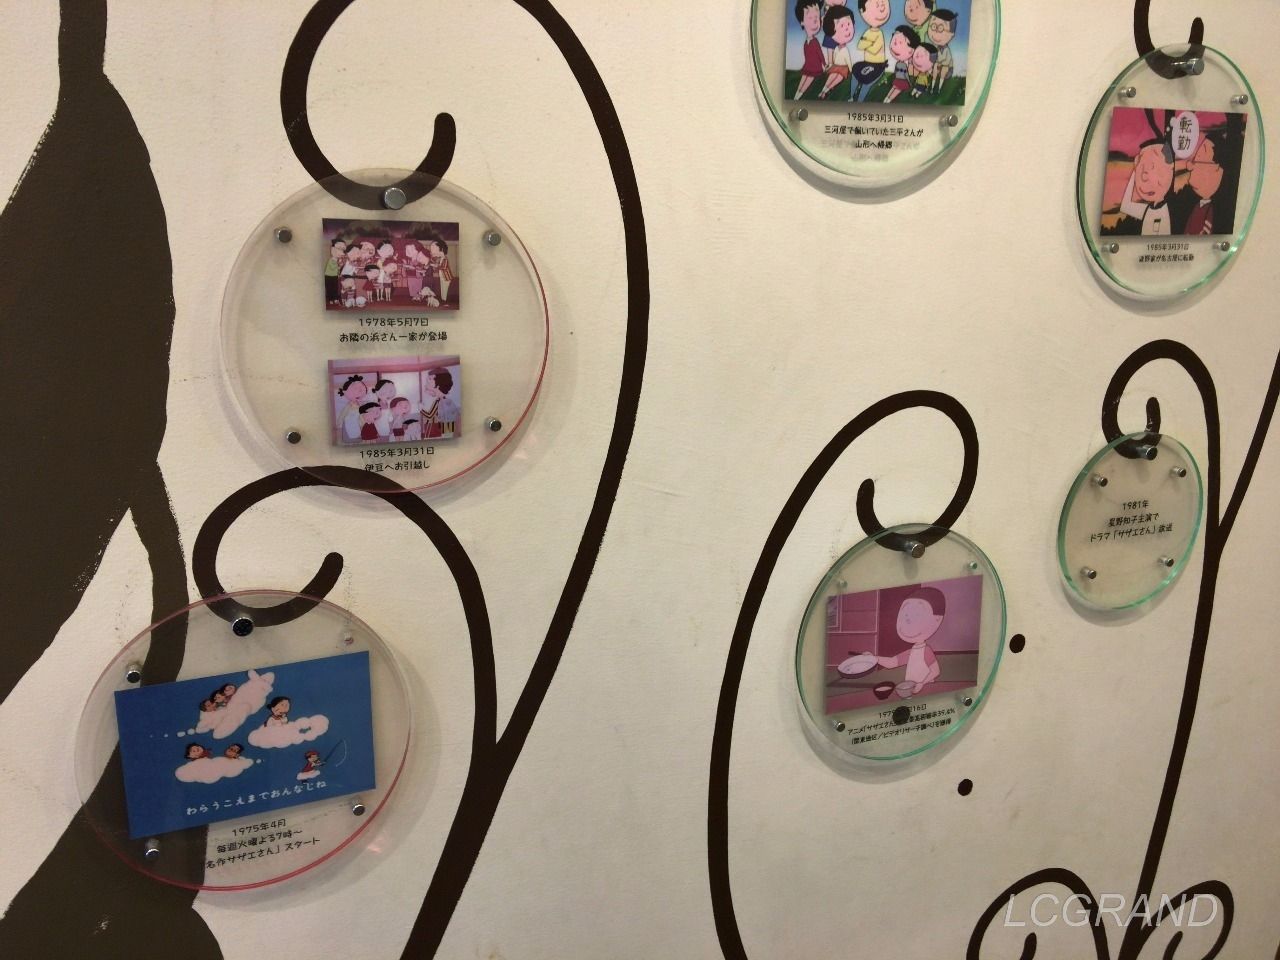 壁に飾られたアニメ画像付きのサザエさんの歴史